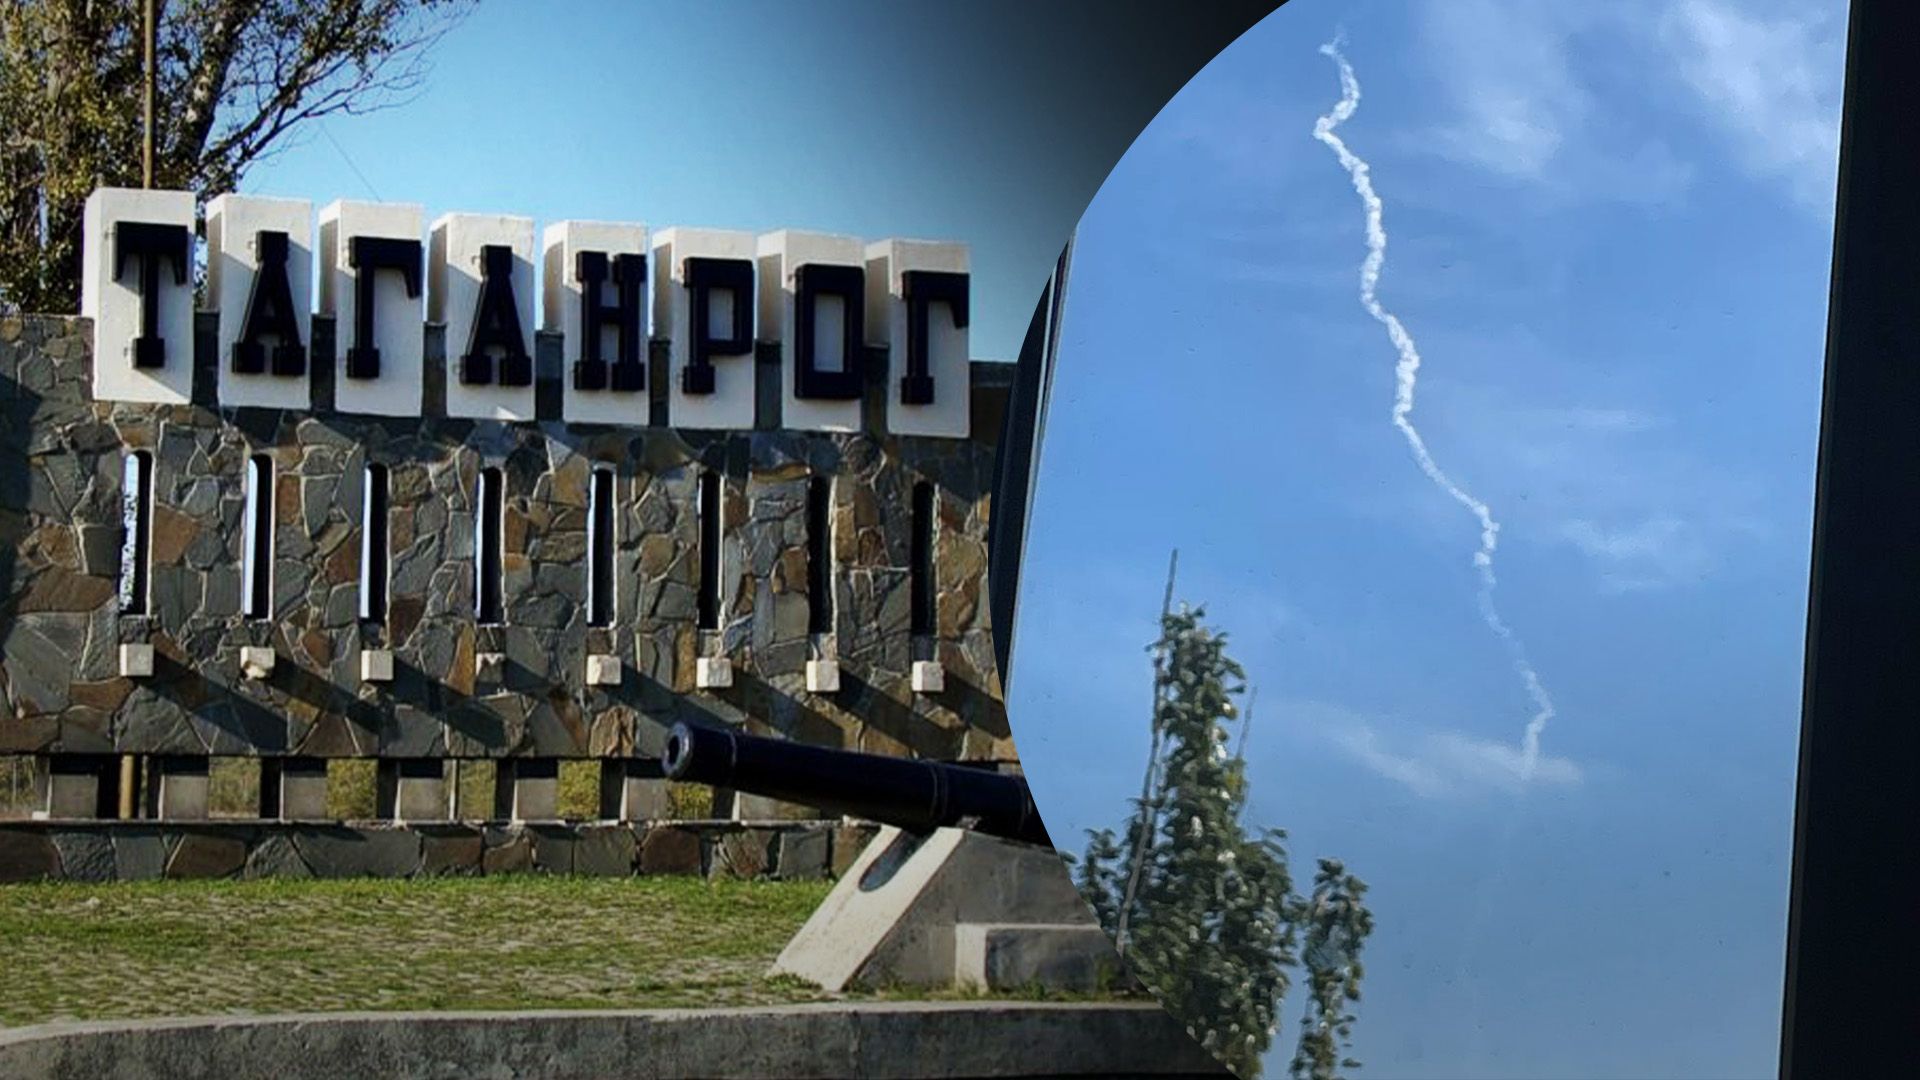 Мешканці Таганрогу повідомили про вибухи: одні кажуть про дрони, інші про "учєнія" - 24 Канал